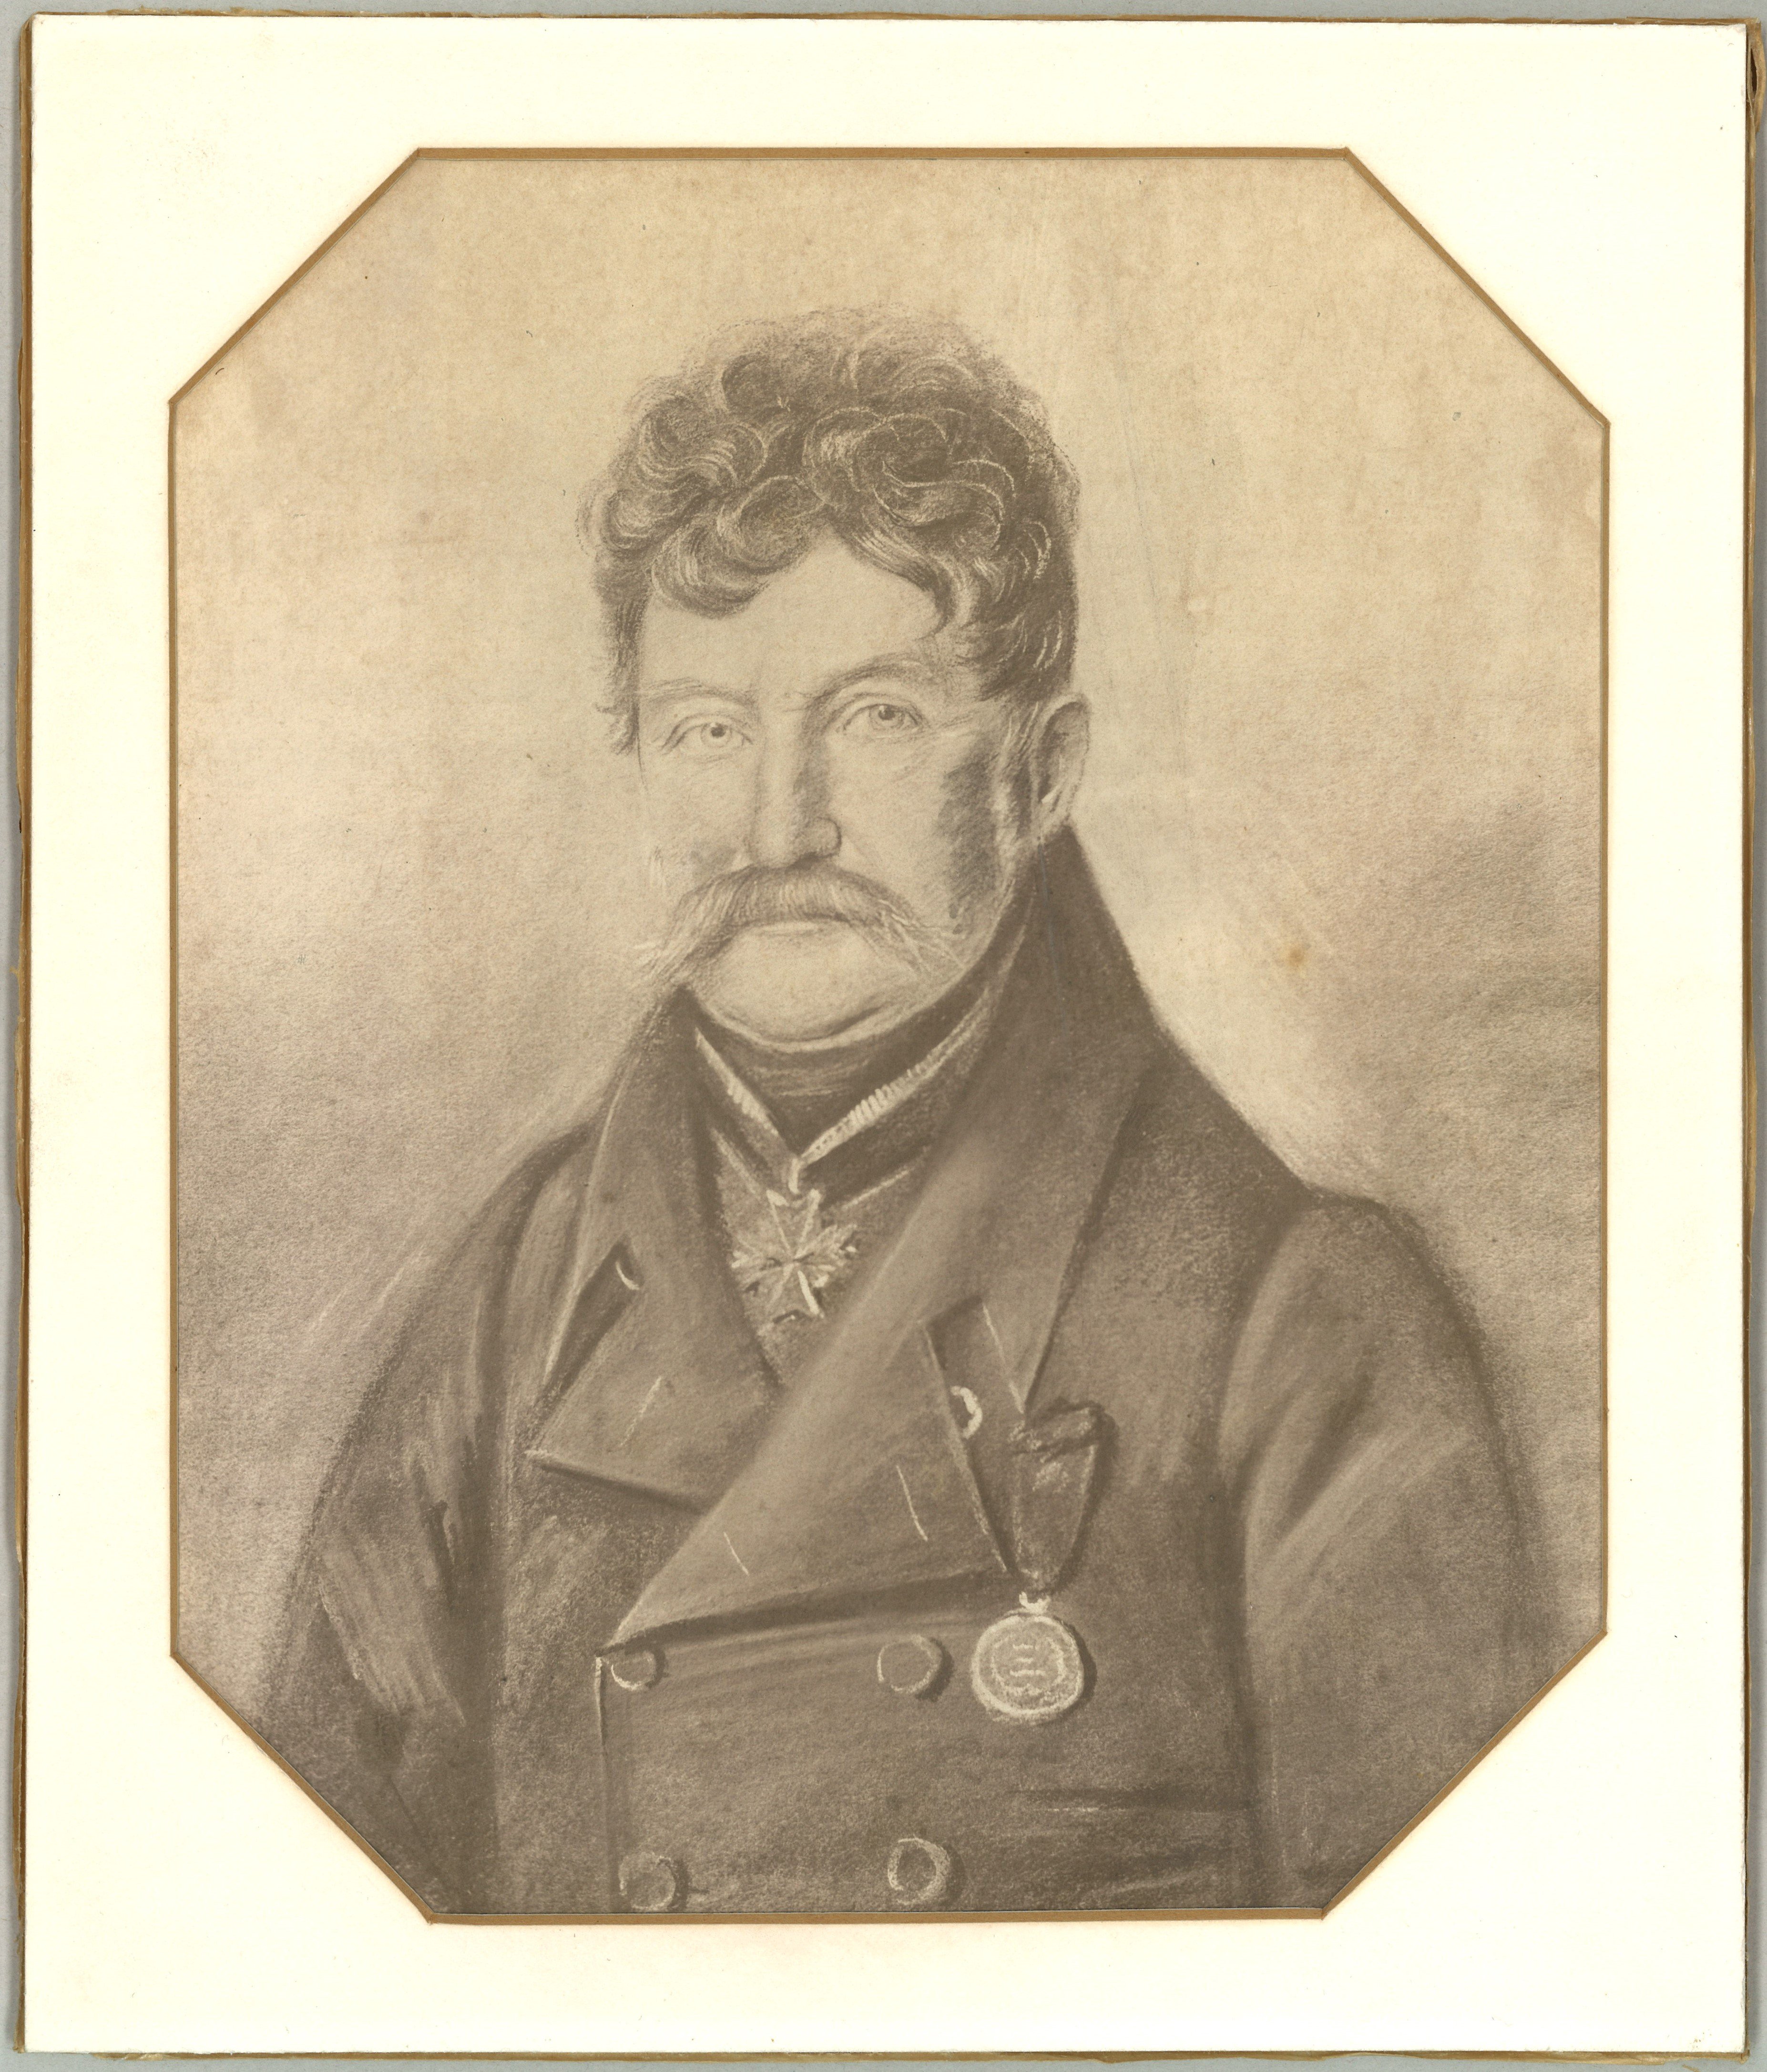 Gebhard, Carl Gottlob (1776-1861), Major a.D., Postmeister in Neuruppin (Landesgeschichtliche Vereinigung für die Mark Brandenburg e.V., Archiv CC BY)